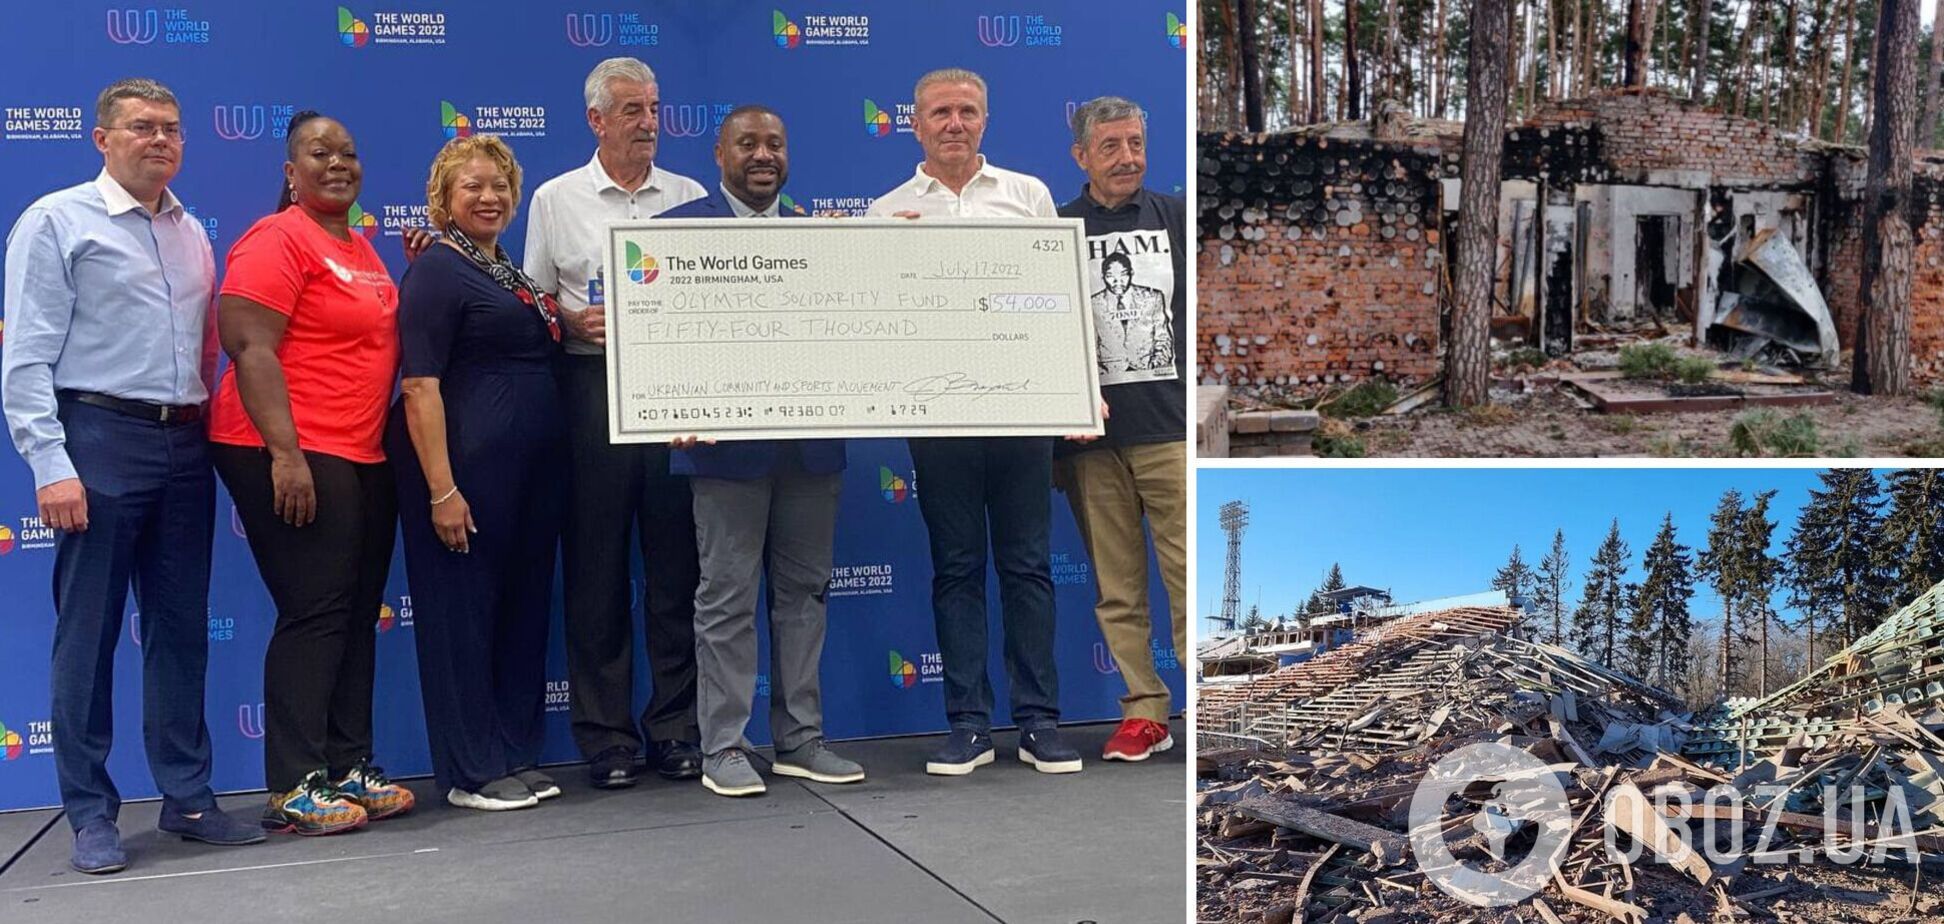 Дарували Україні по 1 долару: 2 мільйони гривень зібрали для ремонту зруйнованих Росією арен на Всесвітніх іграх у США